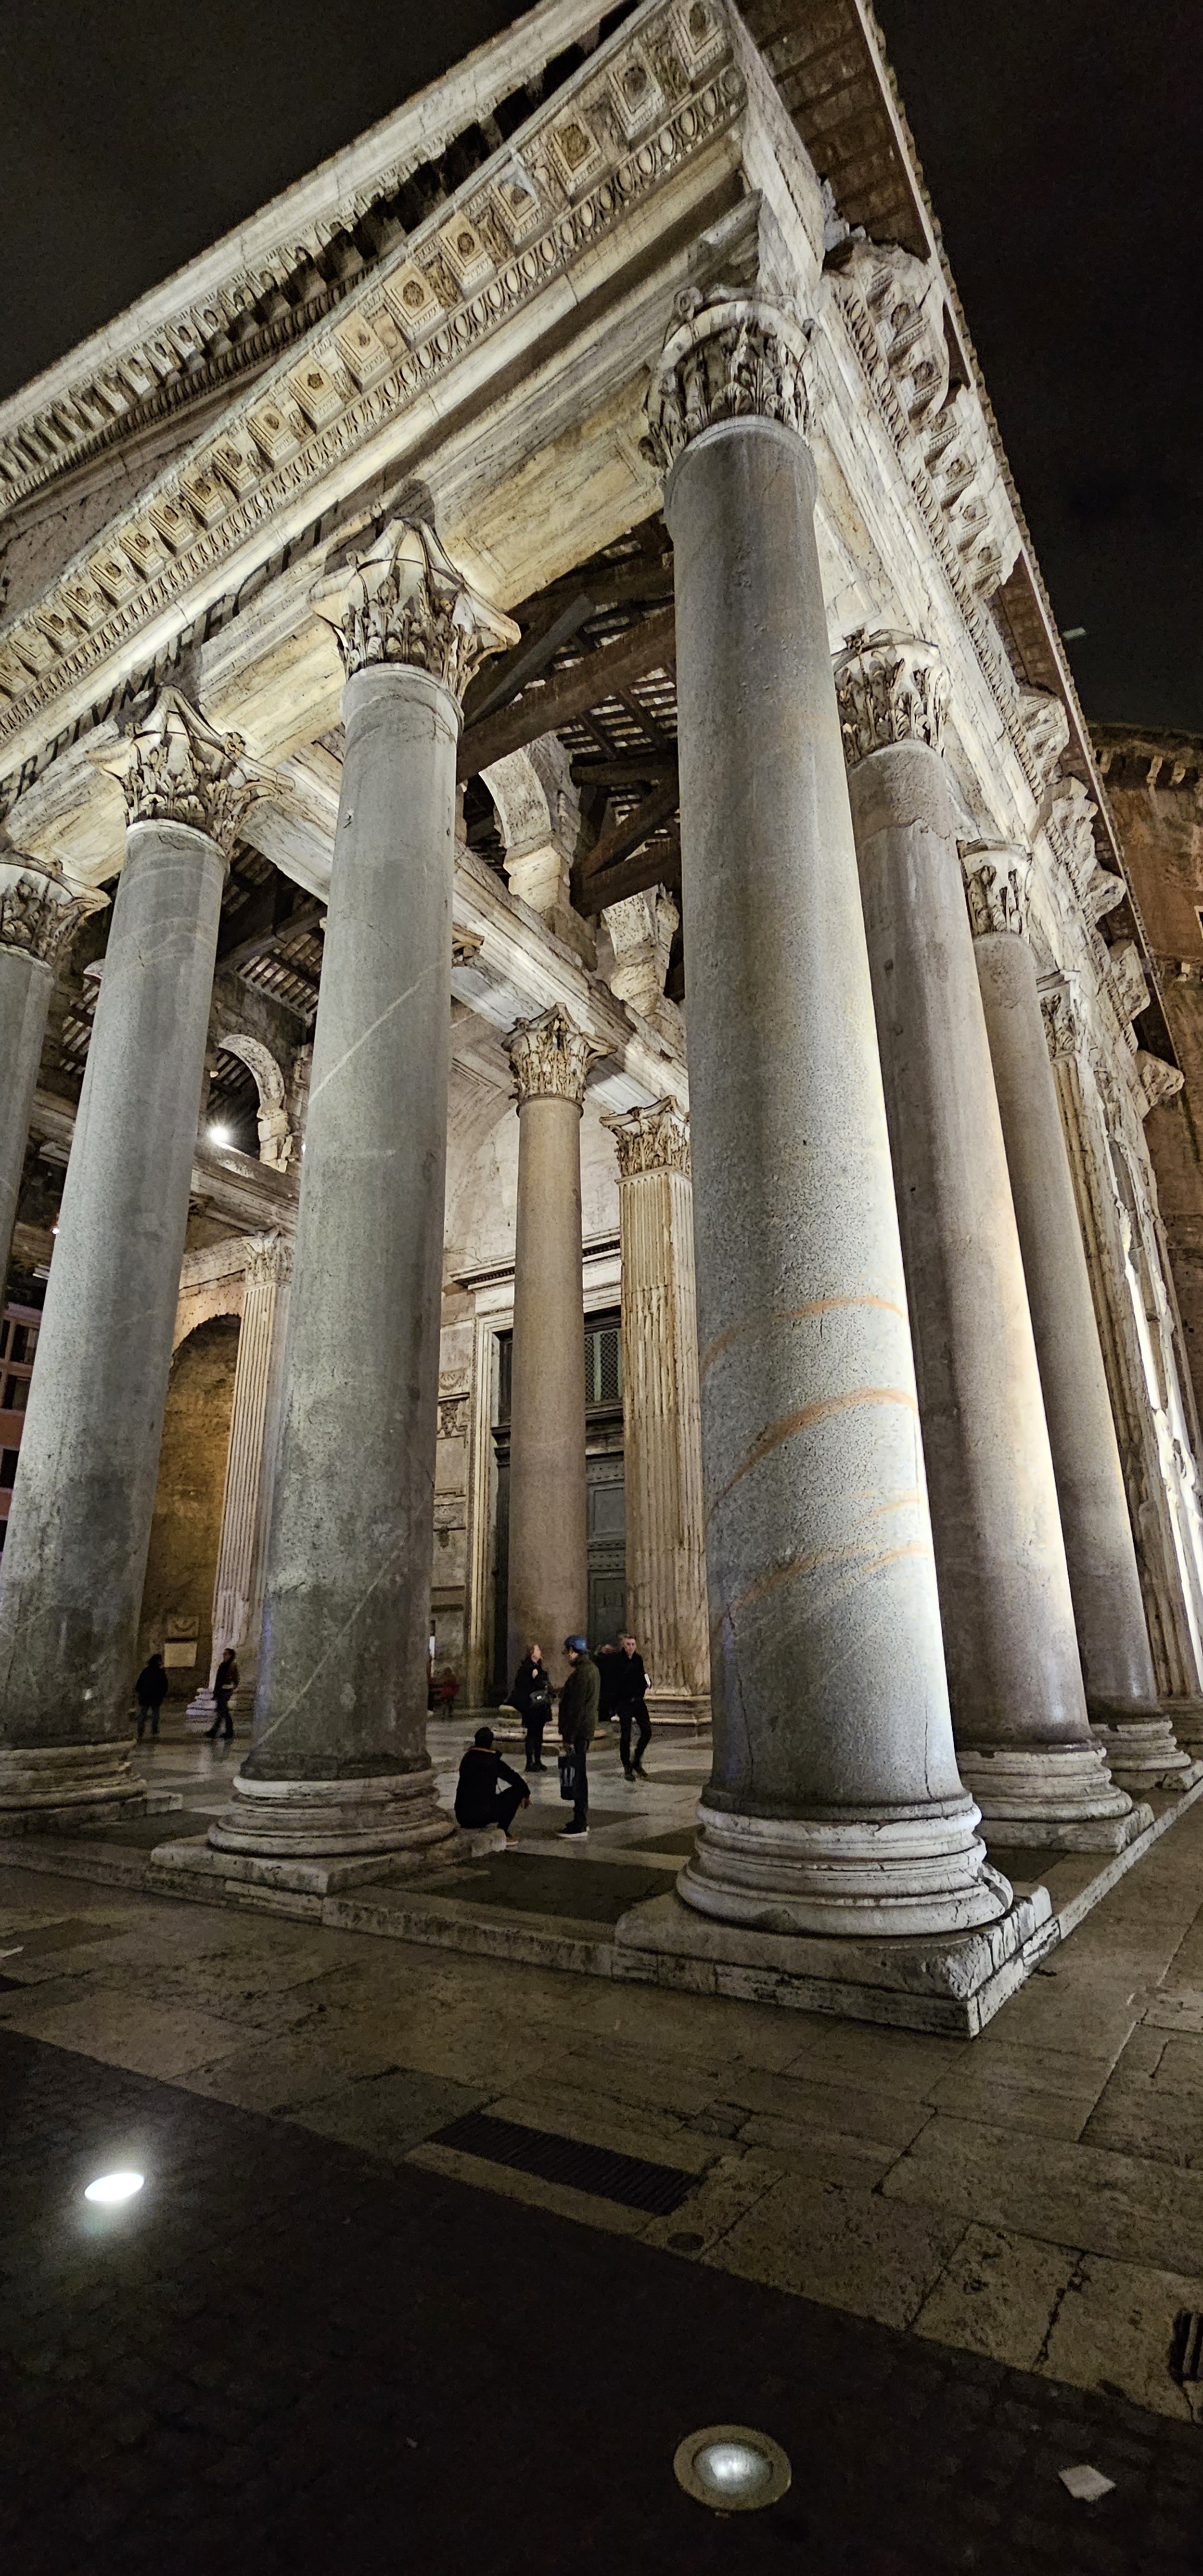 Pantheon Columns at Night